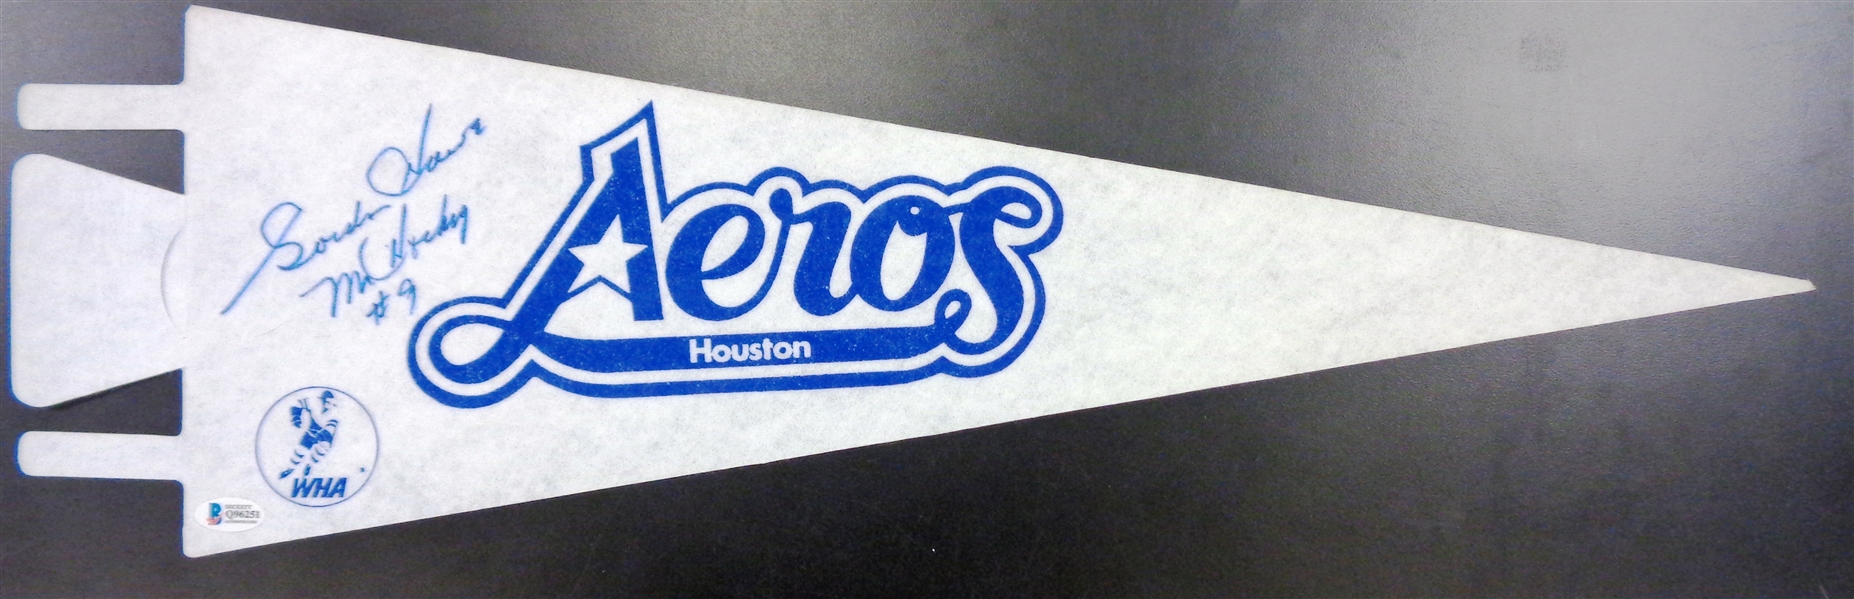 Gordie Howe Autographed Houston Aeros Pennant